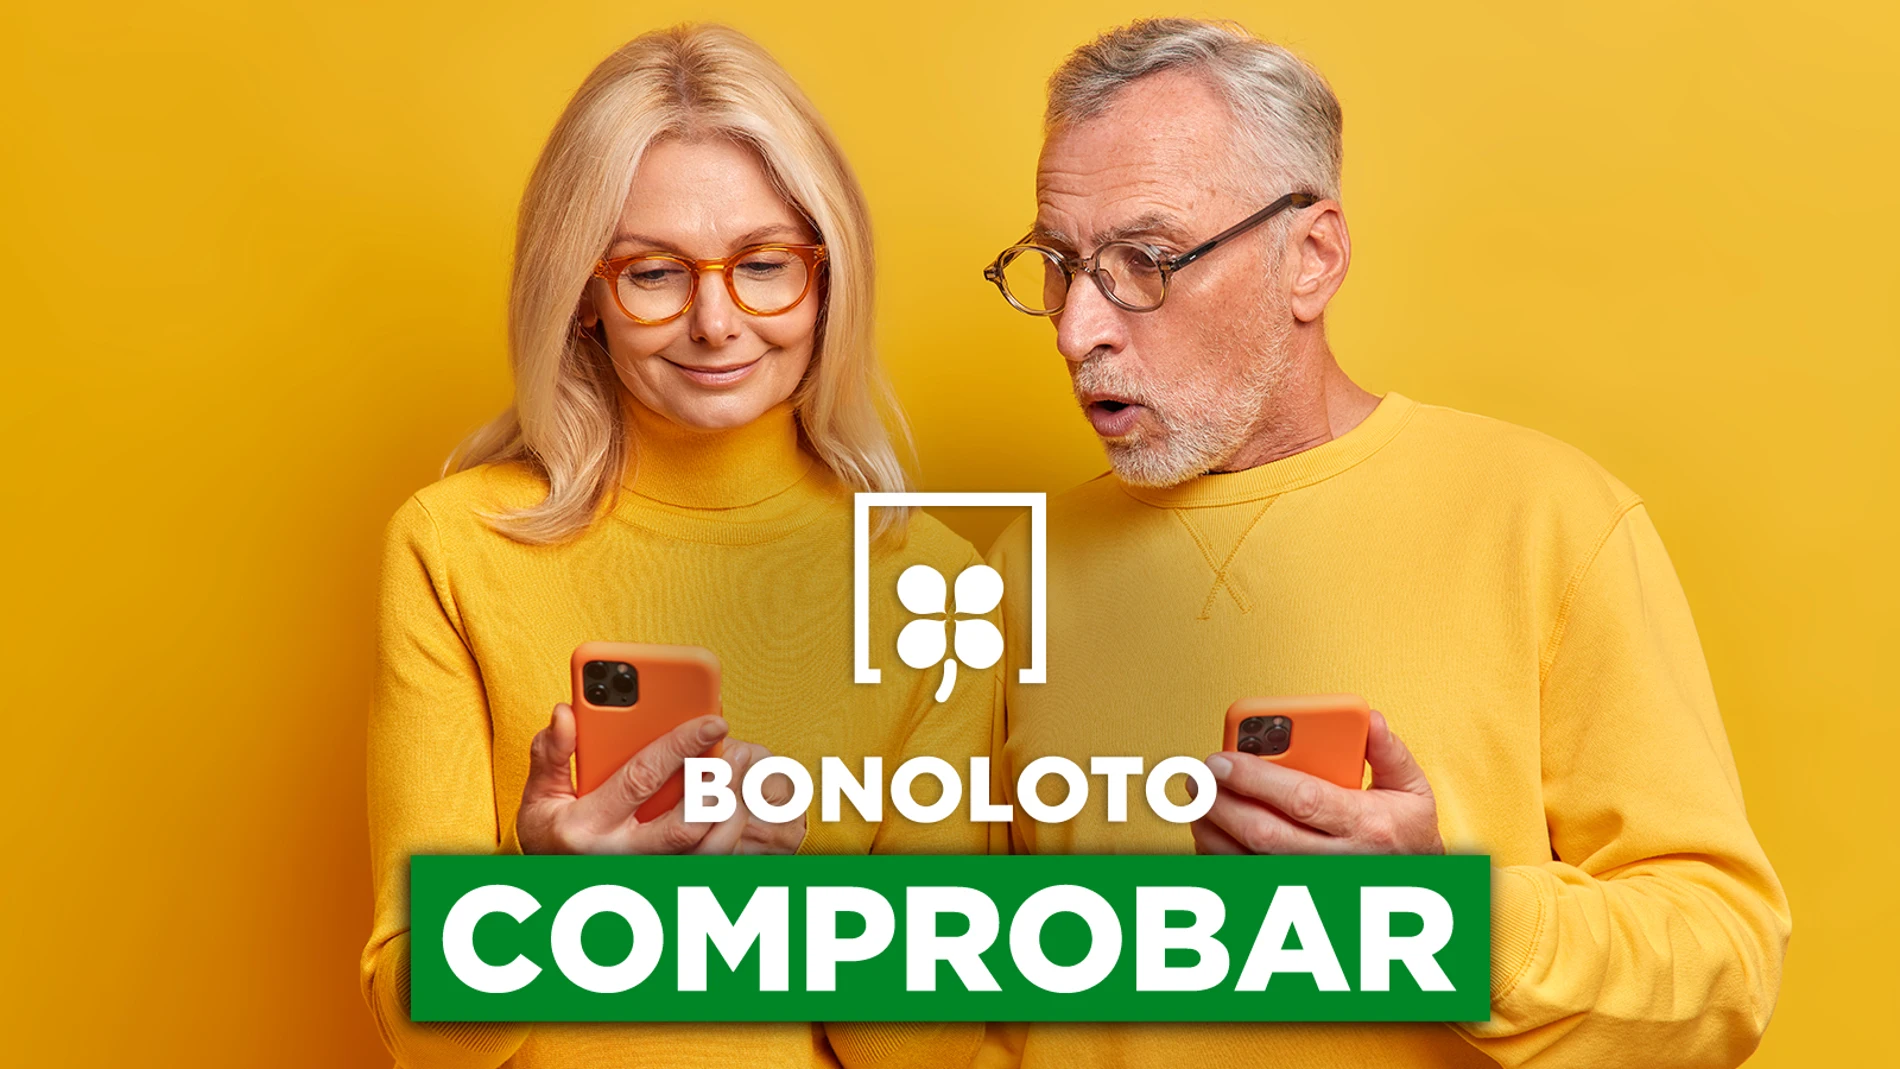 Bonoloto: comprobar hoy, viernes 1 de abril de 2022